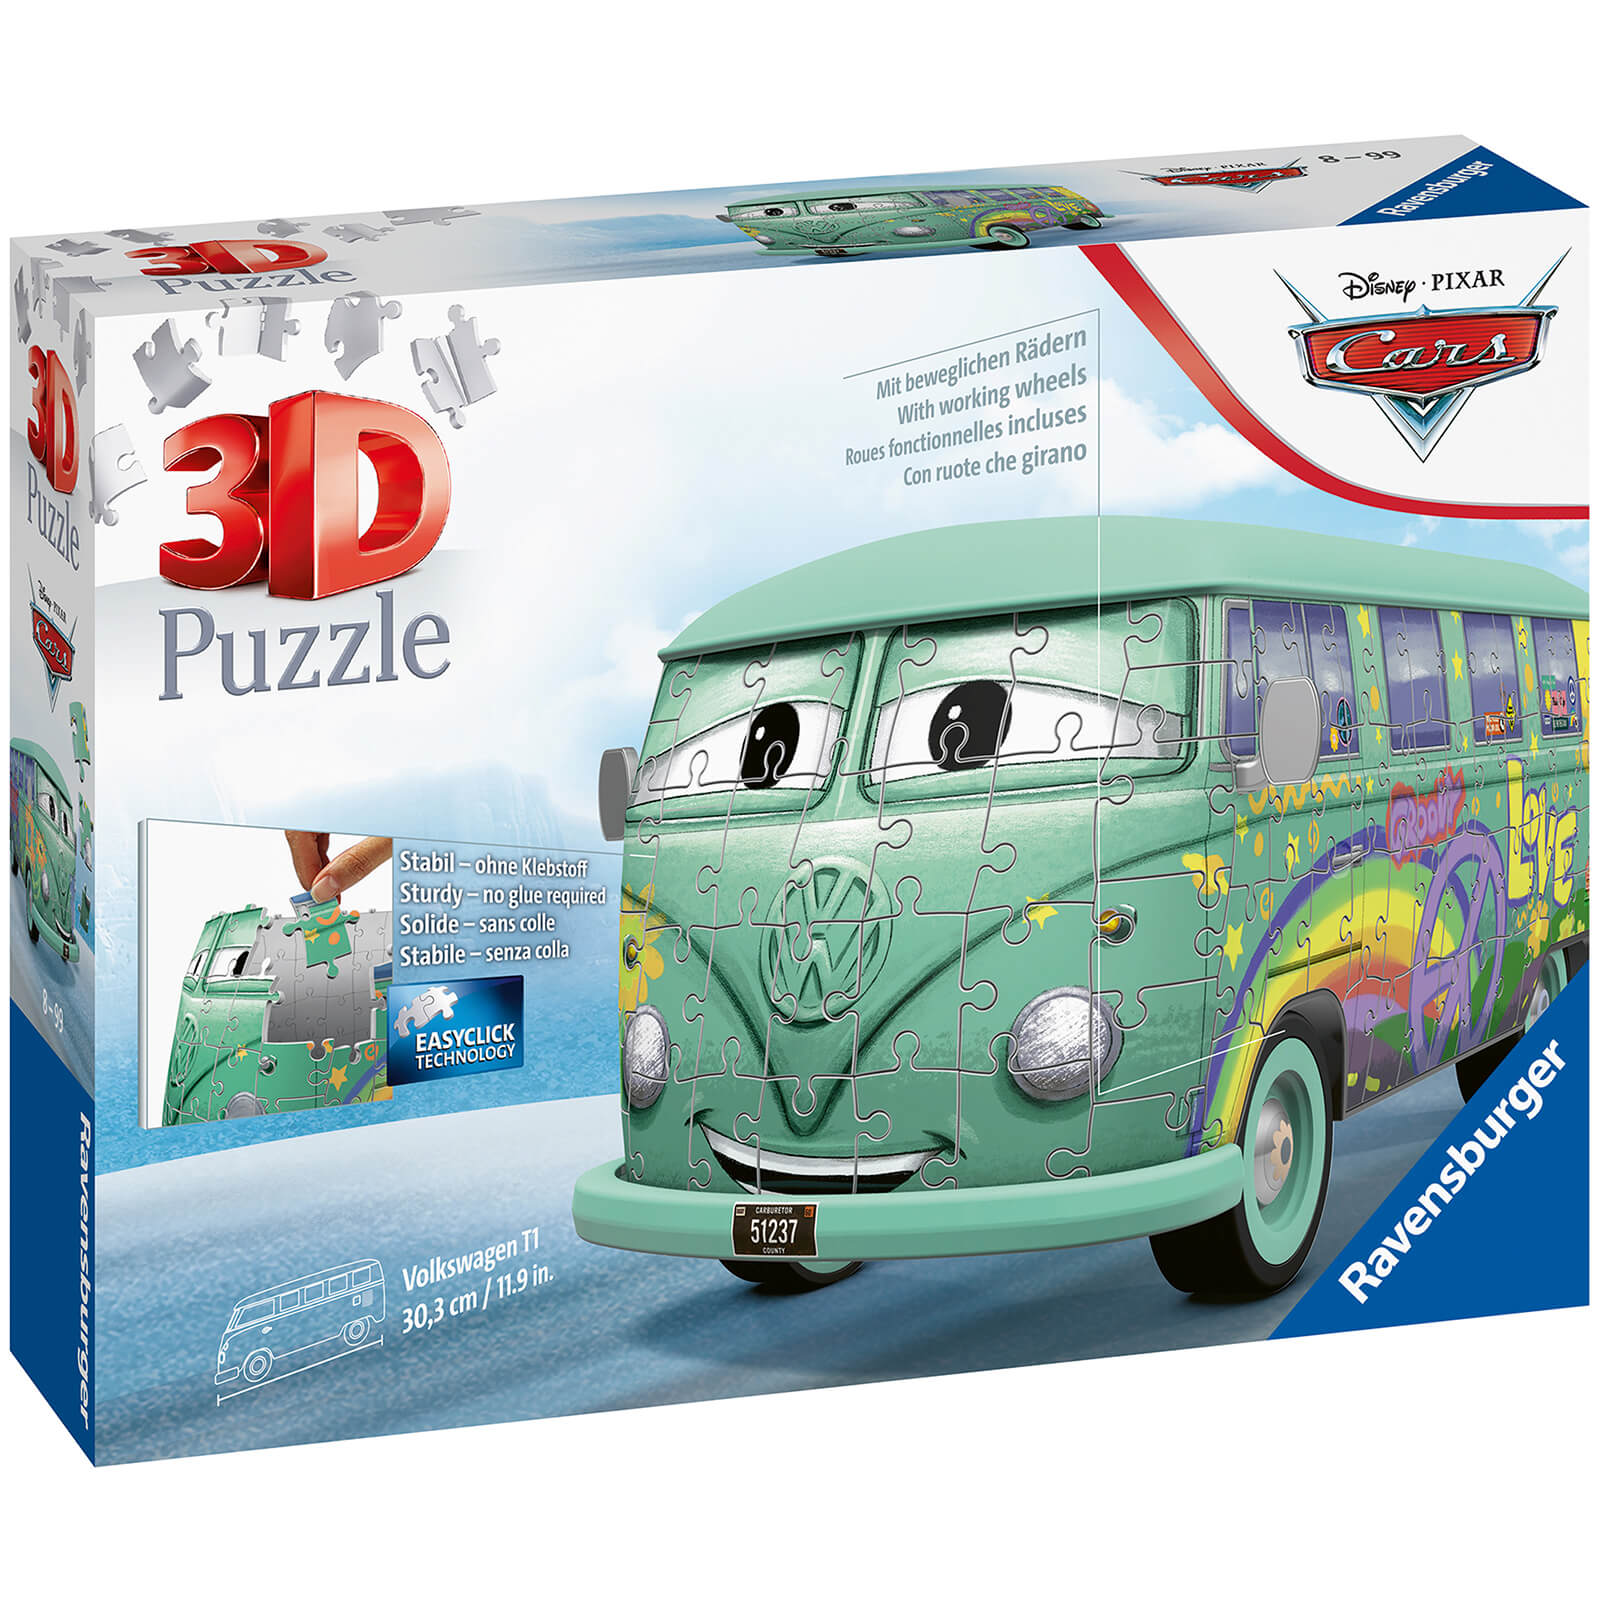 Disney Pixar Cars Filmore - VW Camper Van 3D Jigsaw Puzzle (162 Pieces)